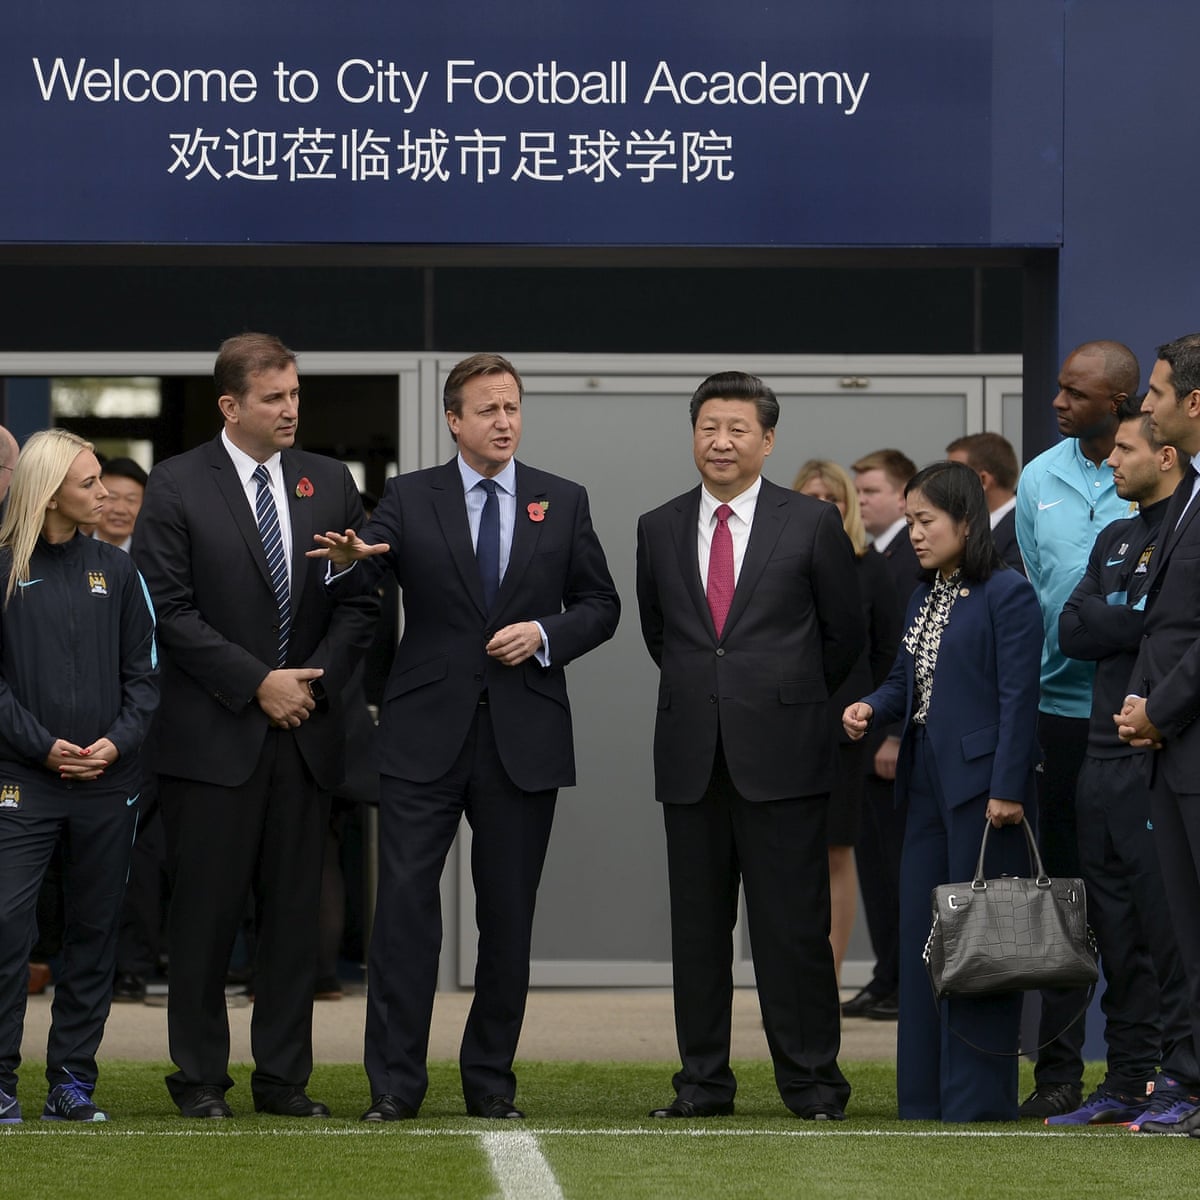 시진핑 주석은 축구굴기를 통해 침체되어 있던 중국 축구, 특히 중국 슈퍼리그와 중국 대표팀을 경쟁력 있게 만들고자 했다. © 더 가디언 